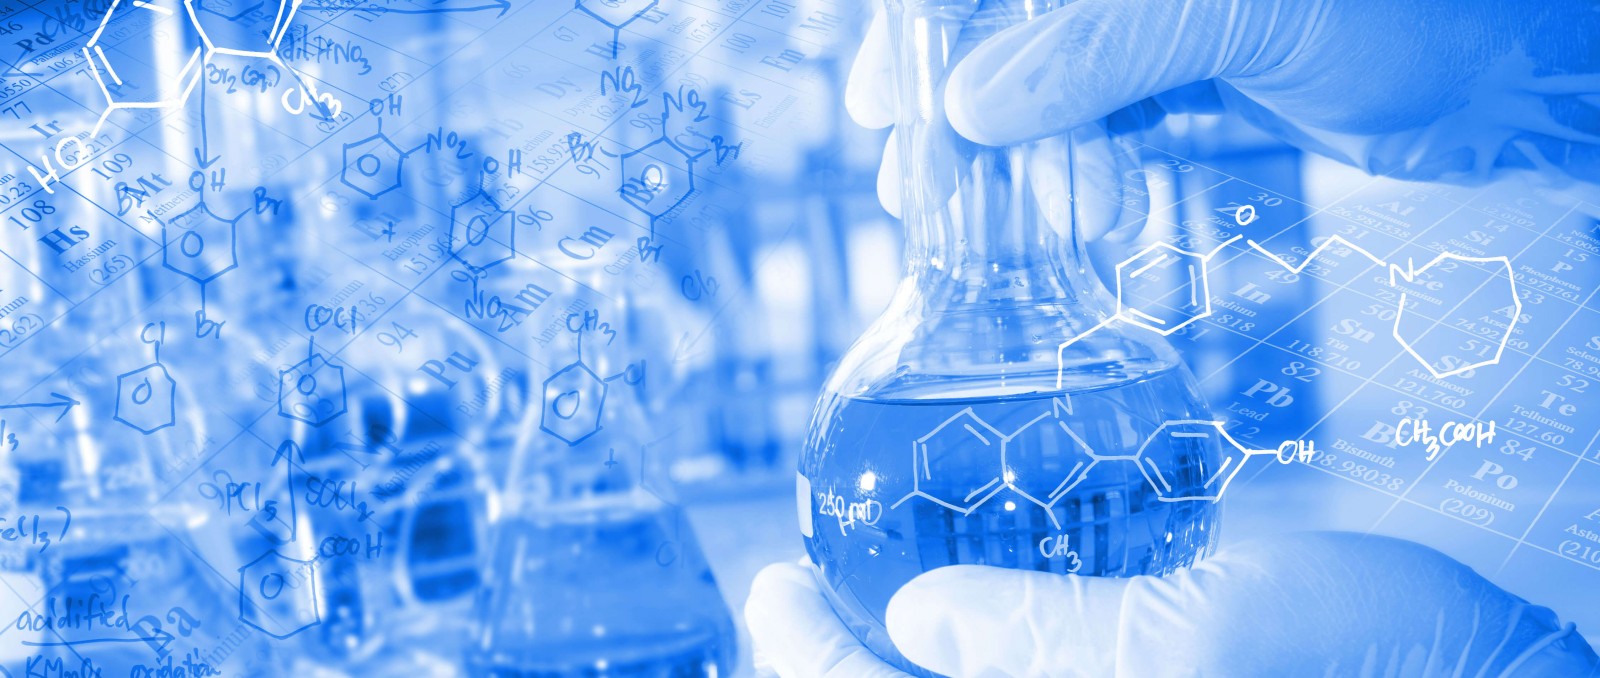 AsstrA укрепляет сотрудничество с химической промышленностью